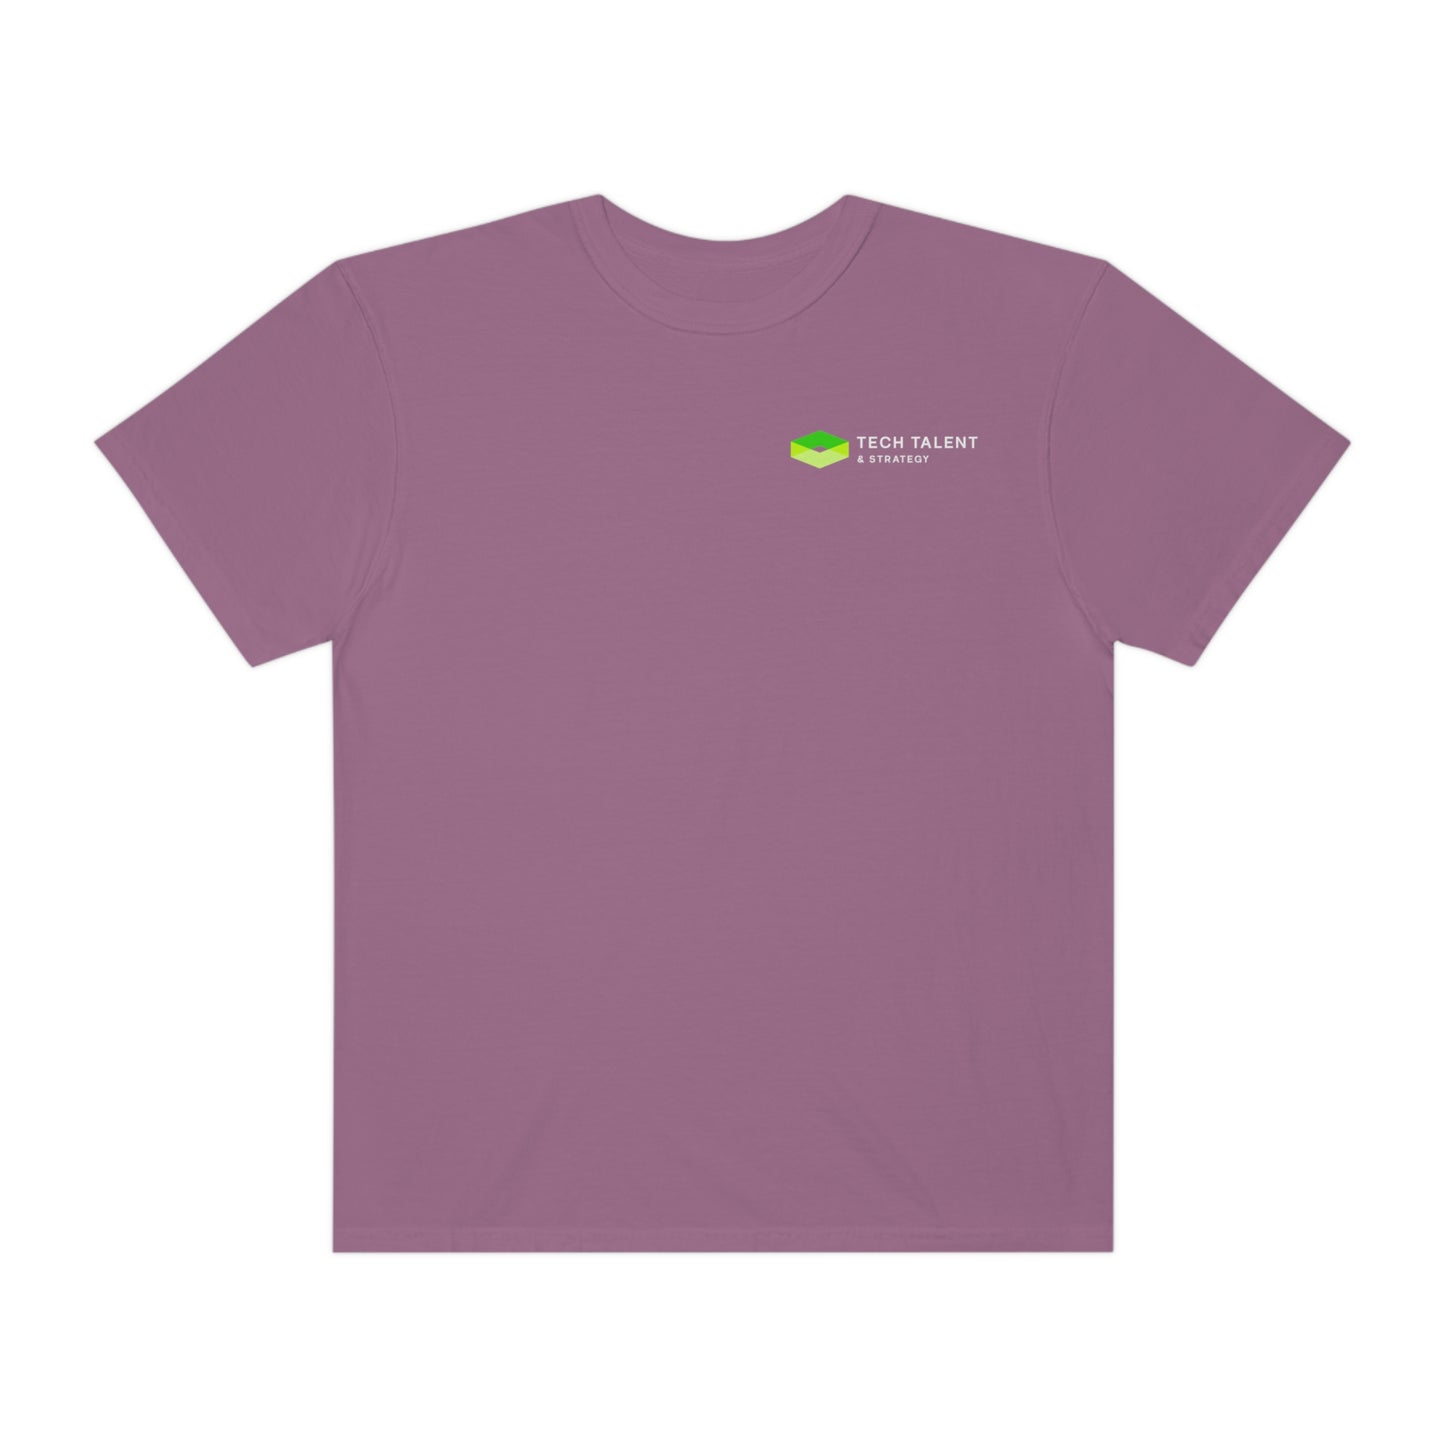 Unisex Green Logo Garment-Dyed T-shirt